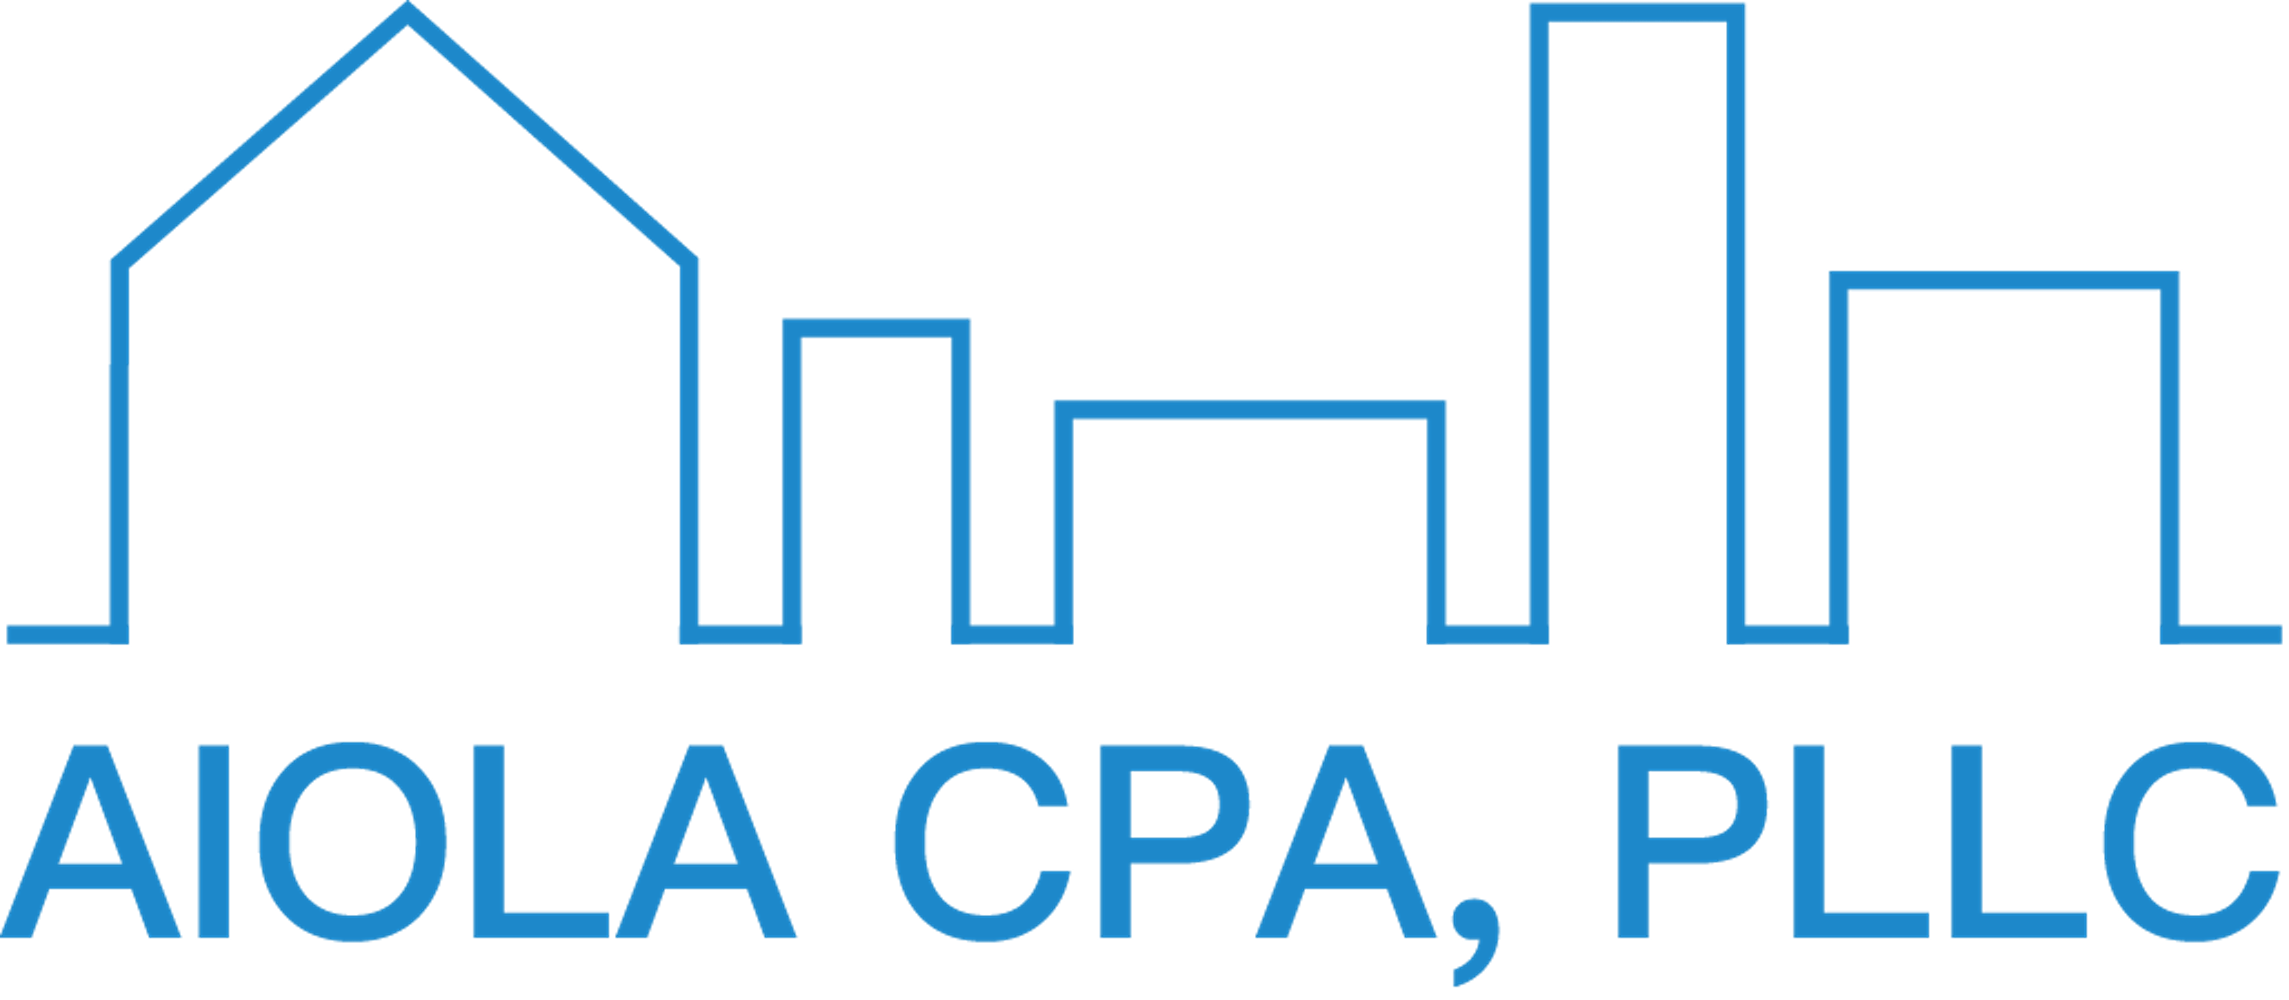 Aiola CPA, PLLC - Logo (Large)